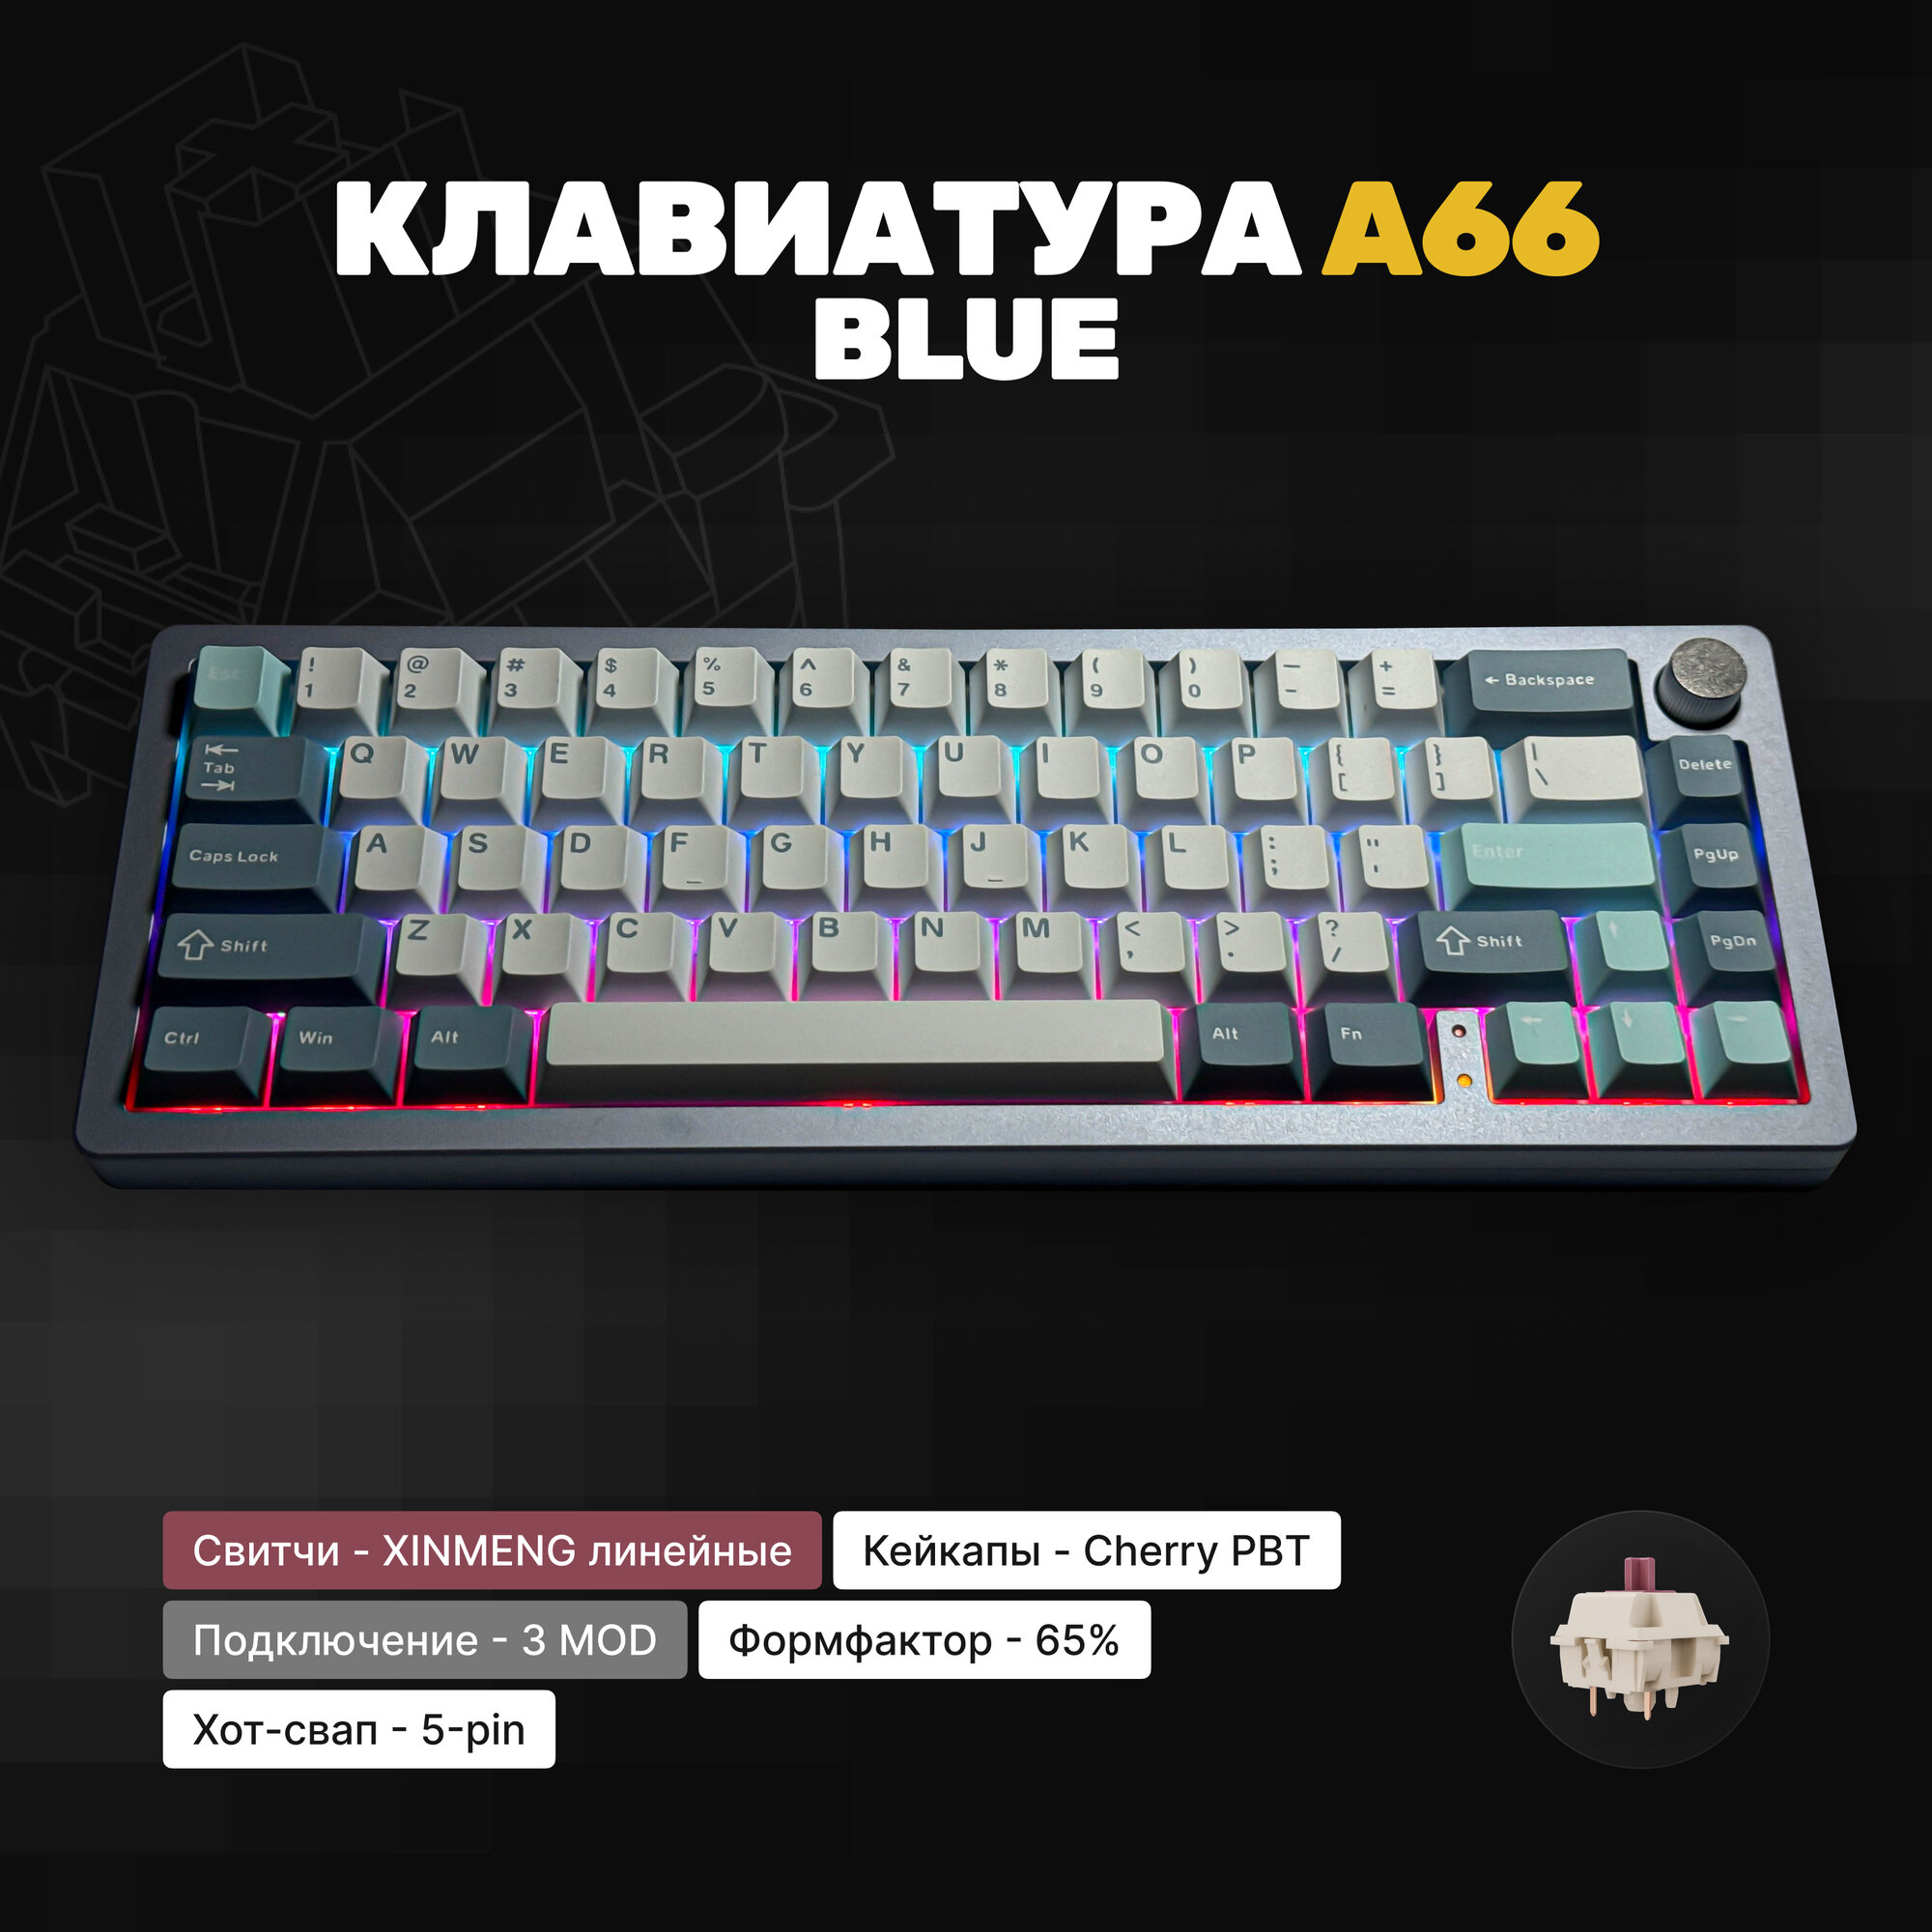 Клавиатура игровая механическая Technology A66 Blue, алюминиевая, синий, Gasket Mount, PBT Double Shot кейкапы, 3MOD, с крутилкой